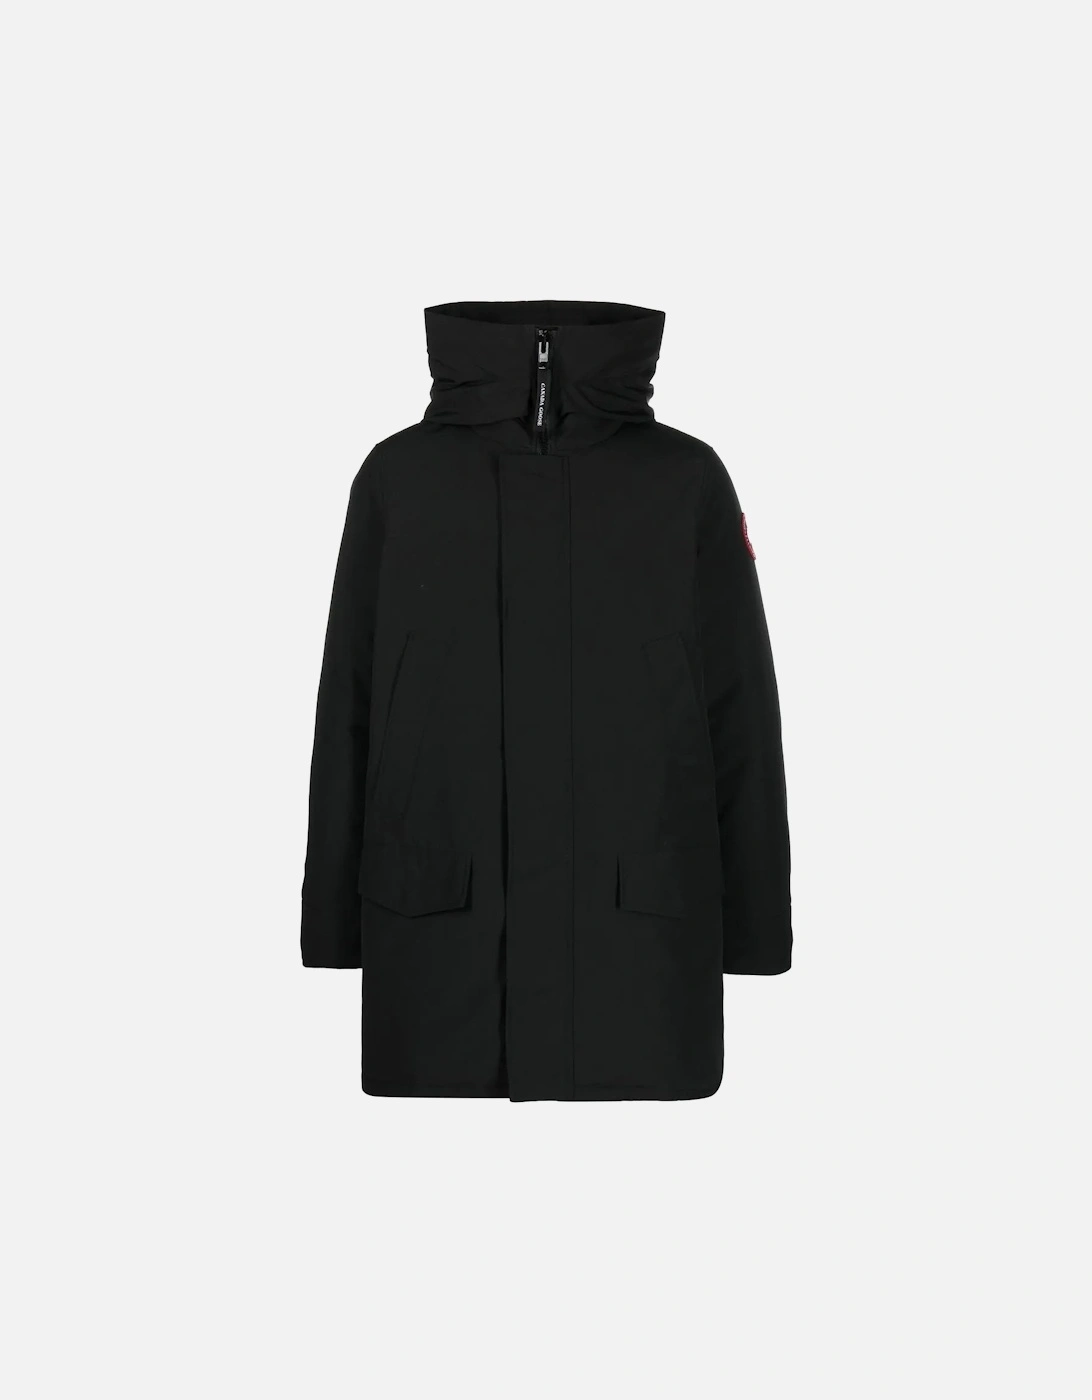 Langford Parka Coat Black, 6 of 5